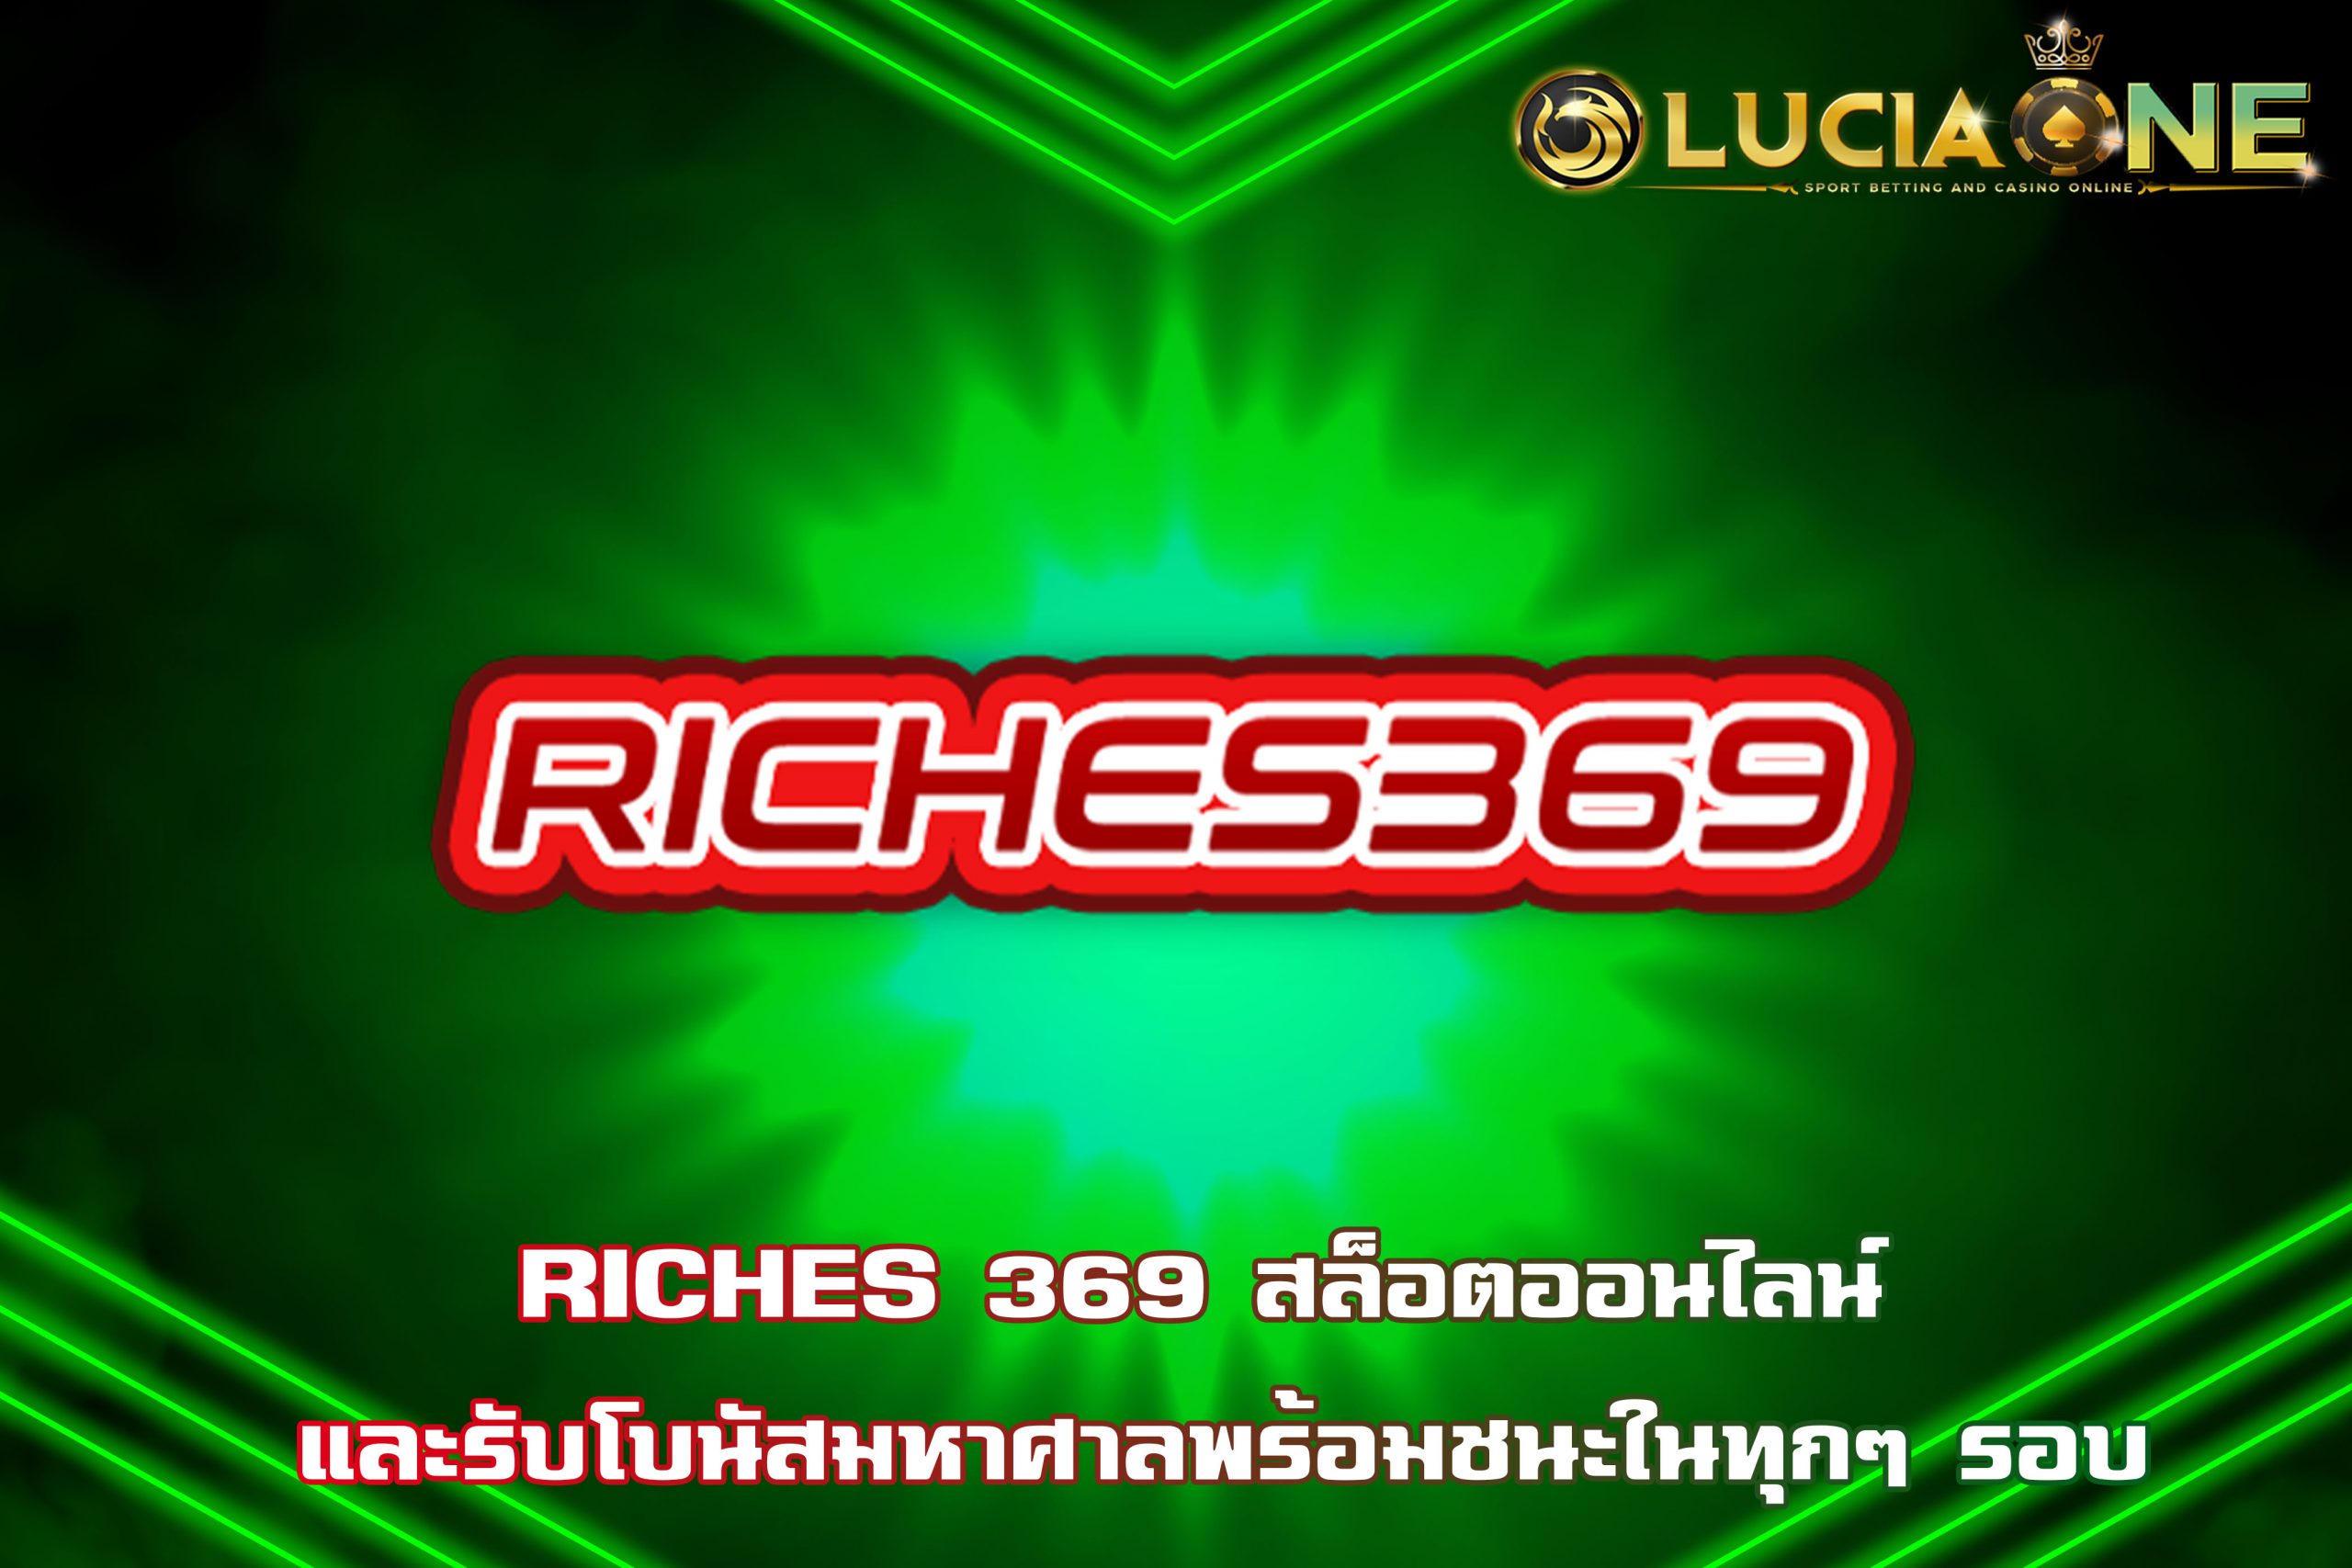 RICHES 369 สล็อตออนไลน์ และรับโบนัสมหาศาลพร้อมชนะในทุกๆ รอบ